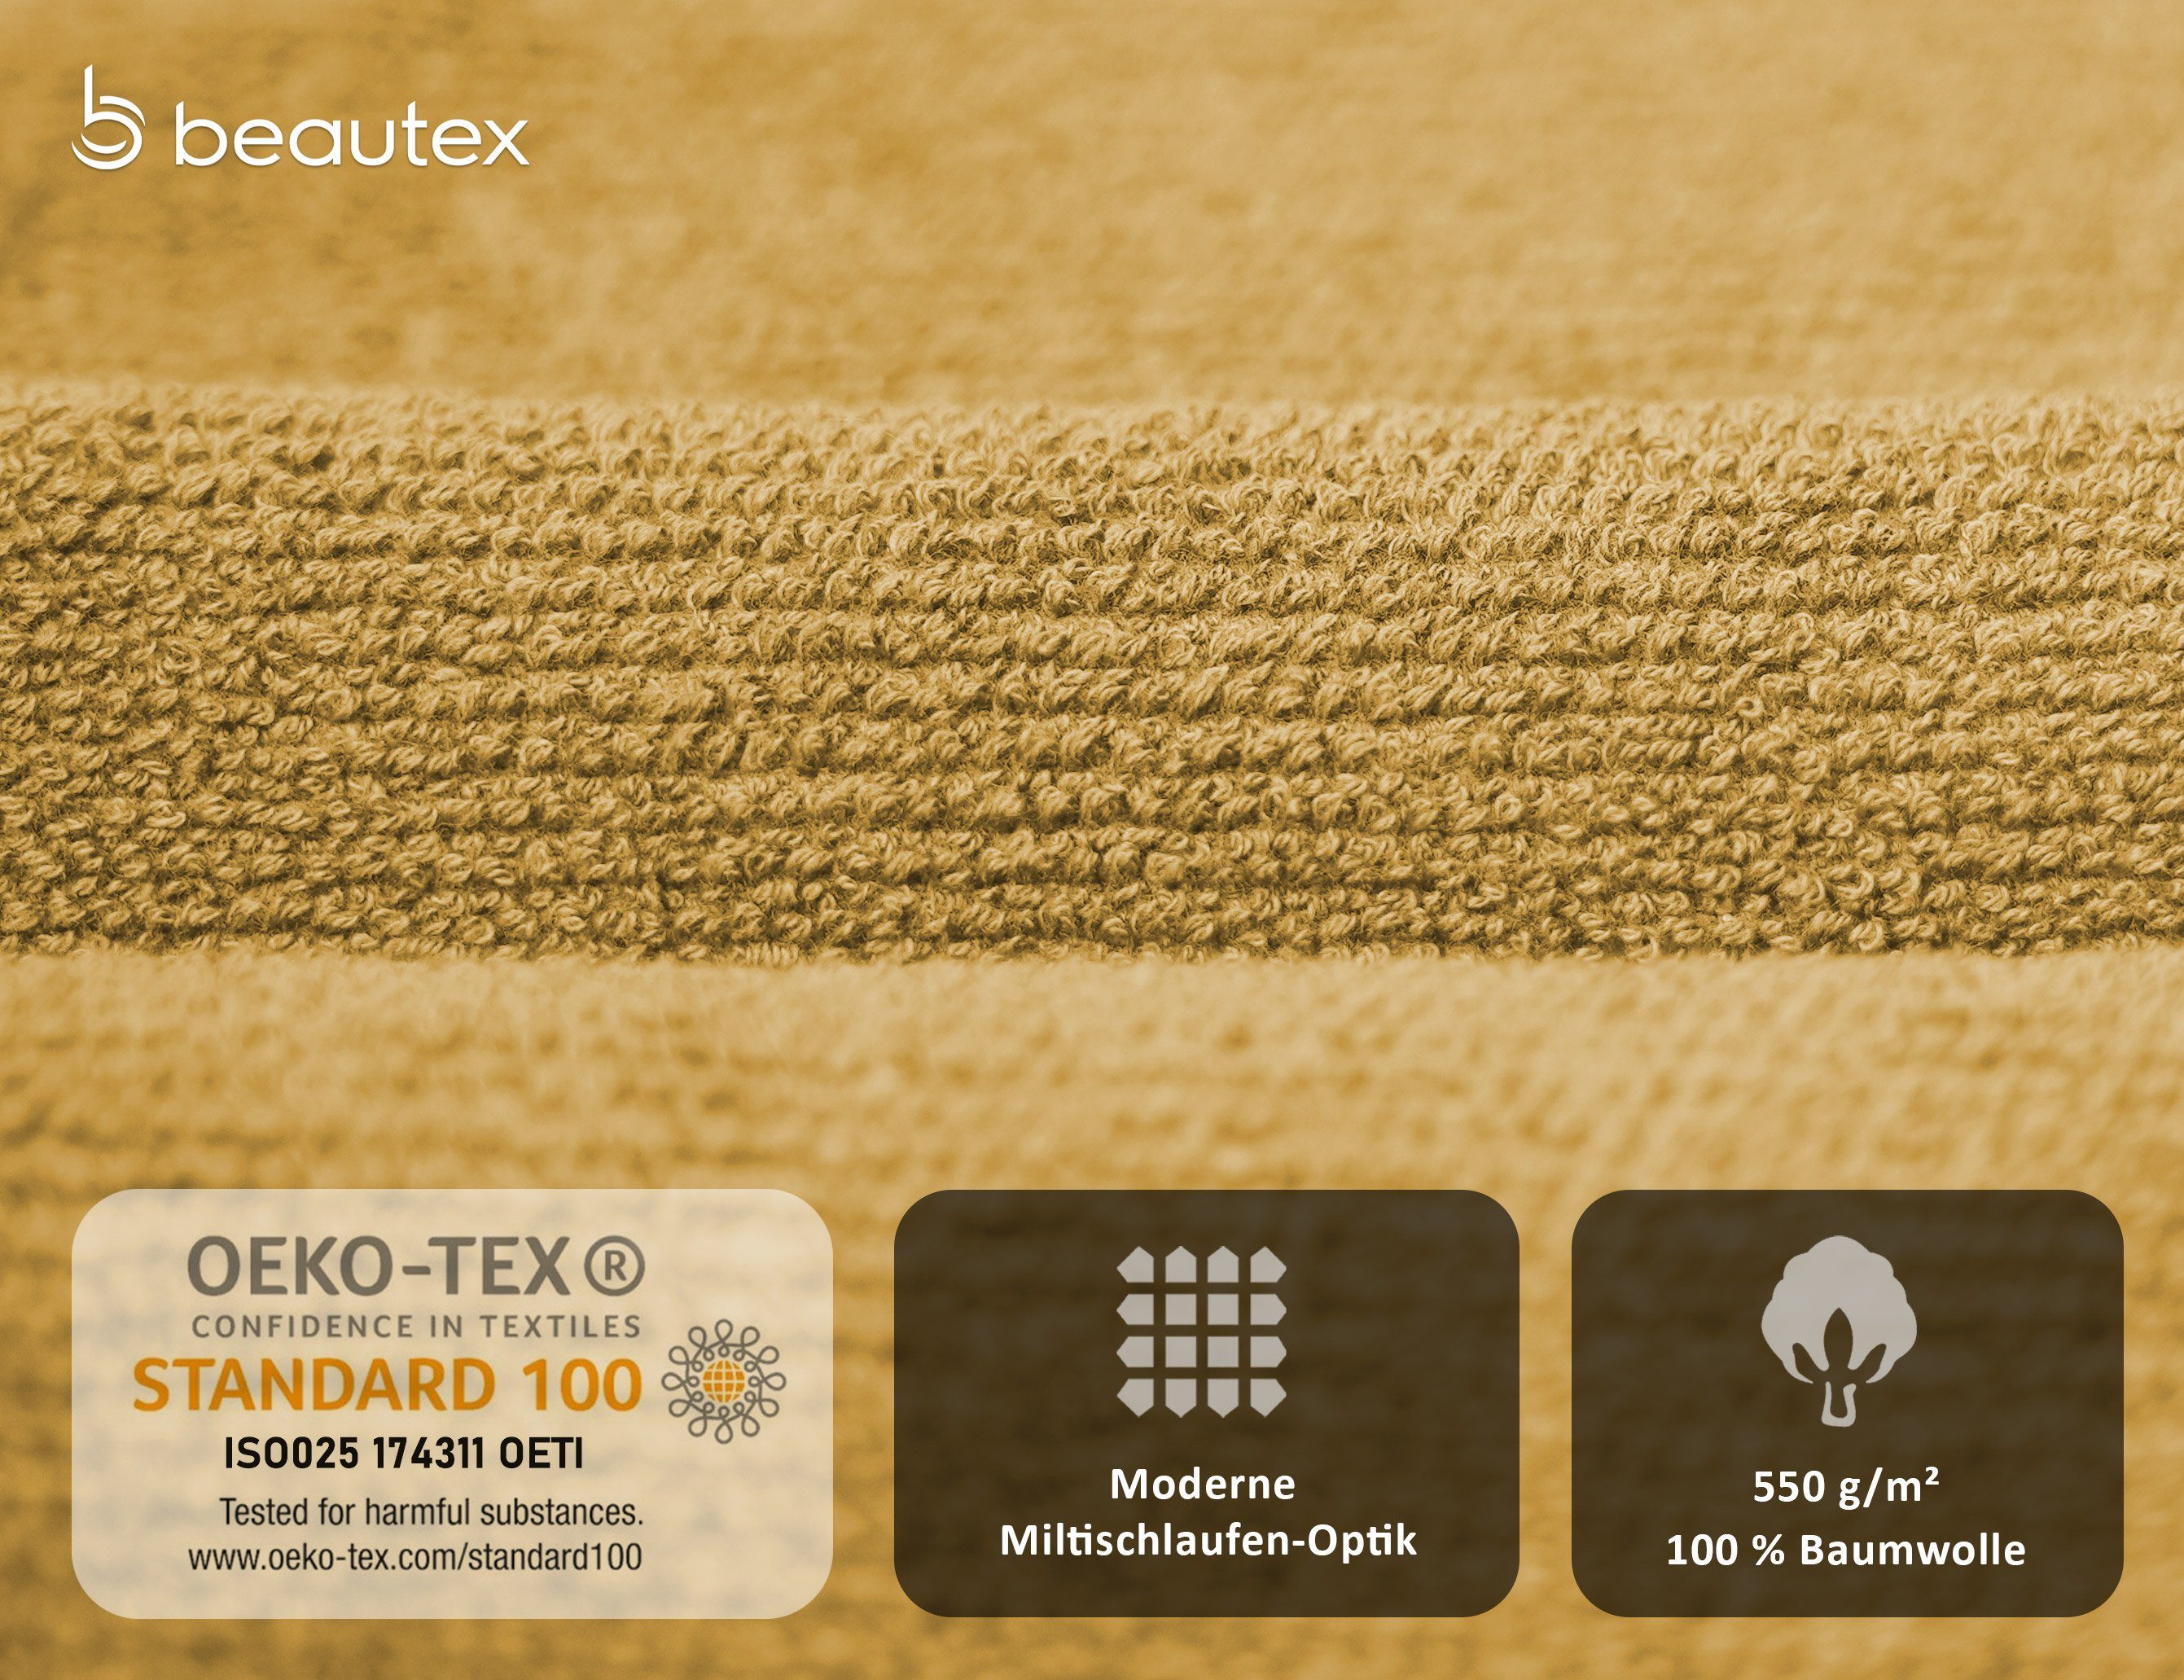 Frottier, Baumwolle Made 550g/m) Europe, Gold Frottier in Set, Handtuch 100% Set aus Premium Beautex Handtuch (Multischlaufen-Optik, Set